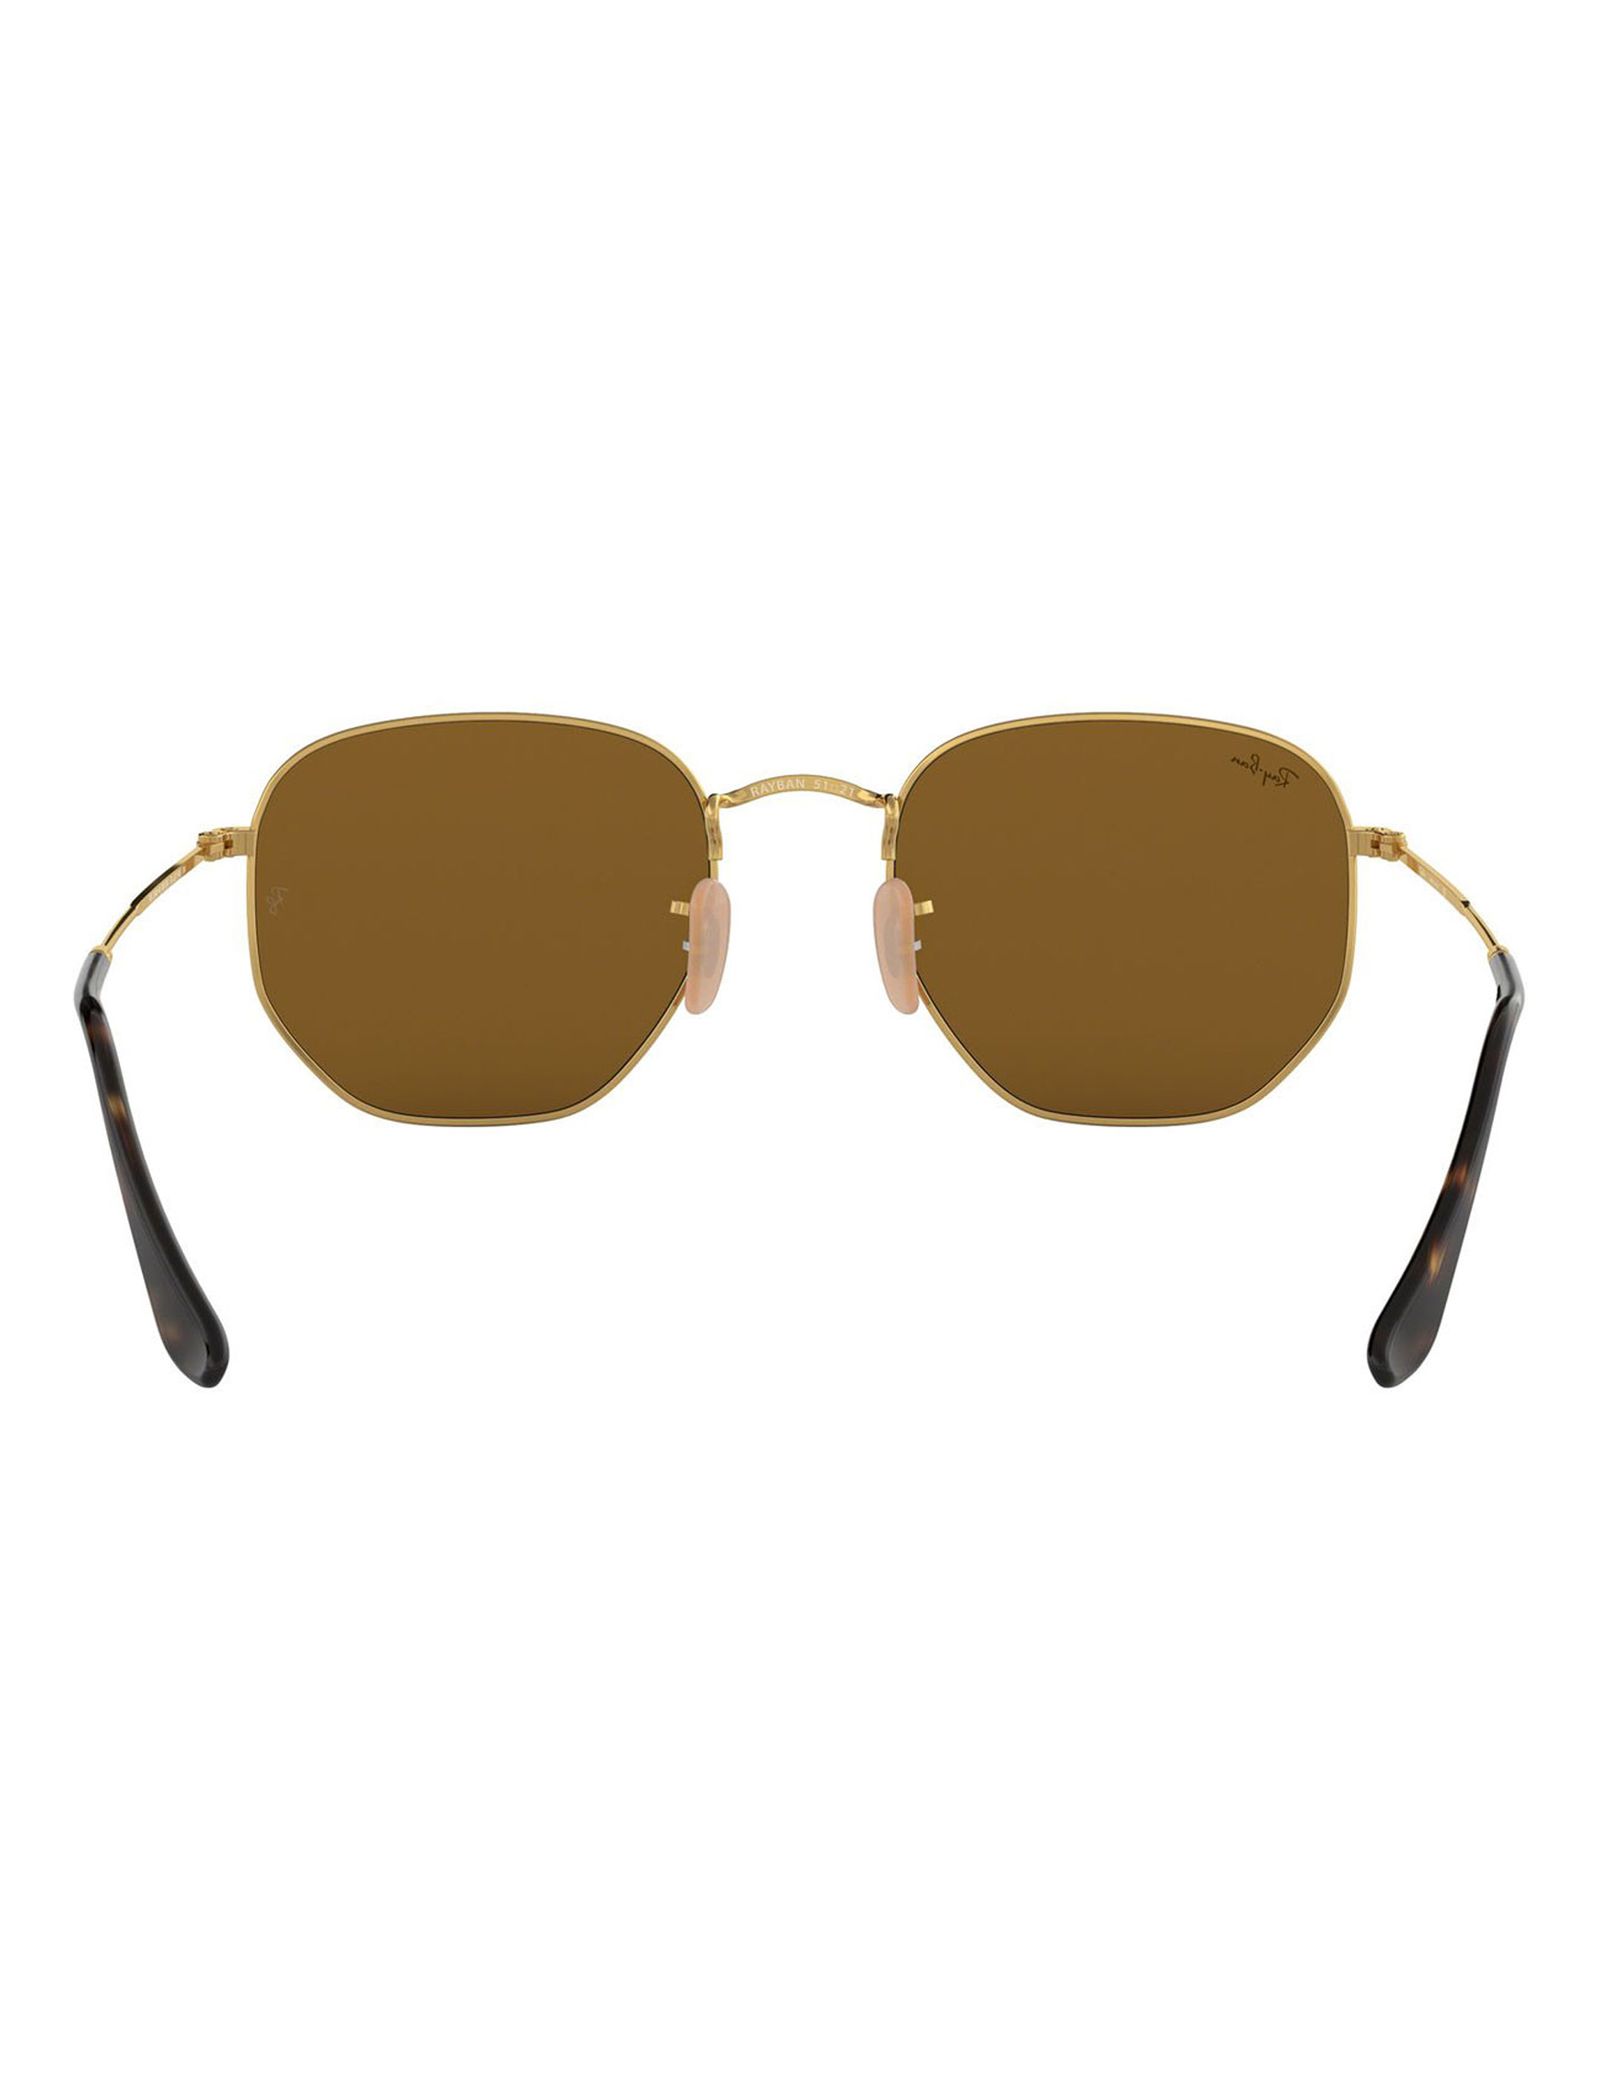 عینک آفتابی ری بن مدل 3548-001/93-51 - طلایی - 5